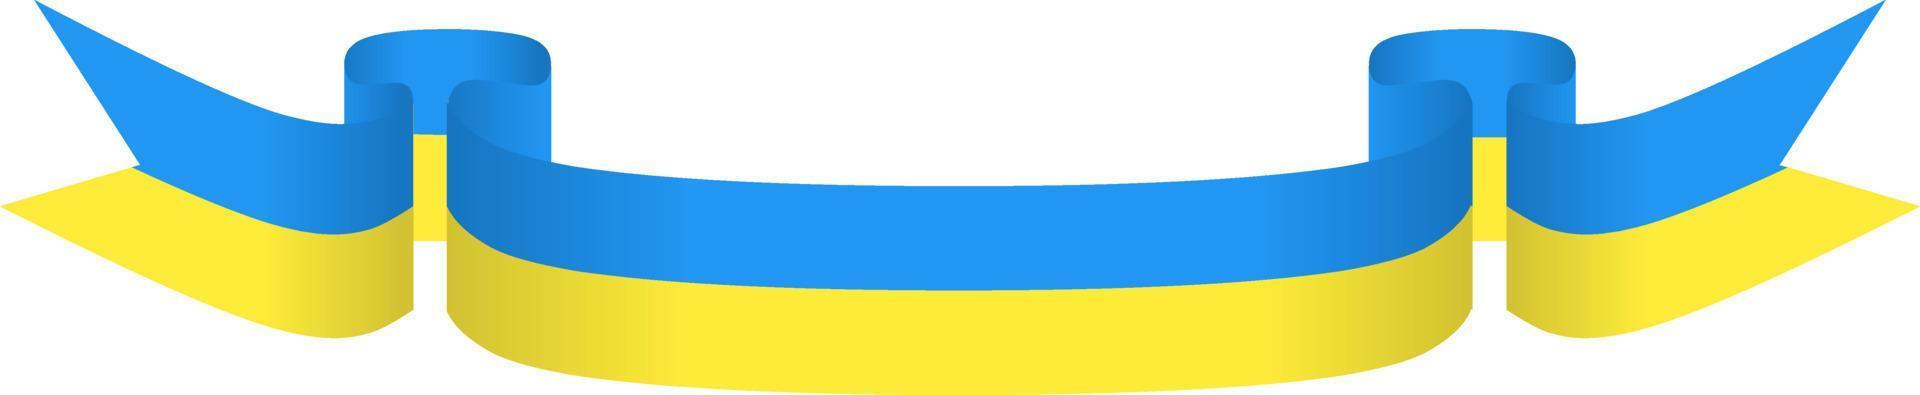 fita de bandeira da ucrânia para sinal, símbolo, ícone, design ou suporte ucraniano vetor